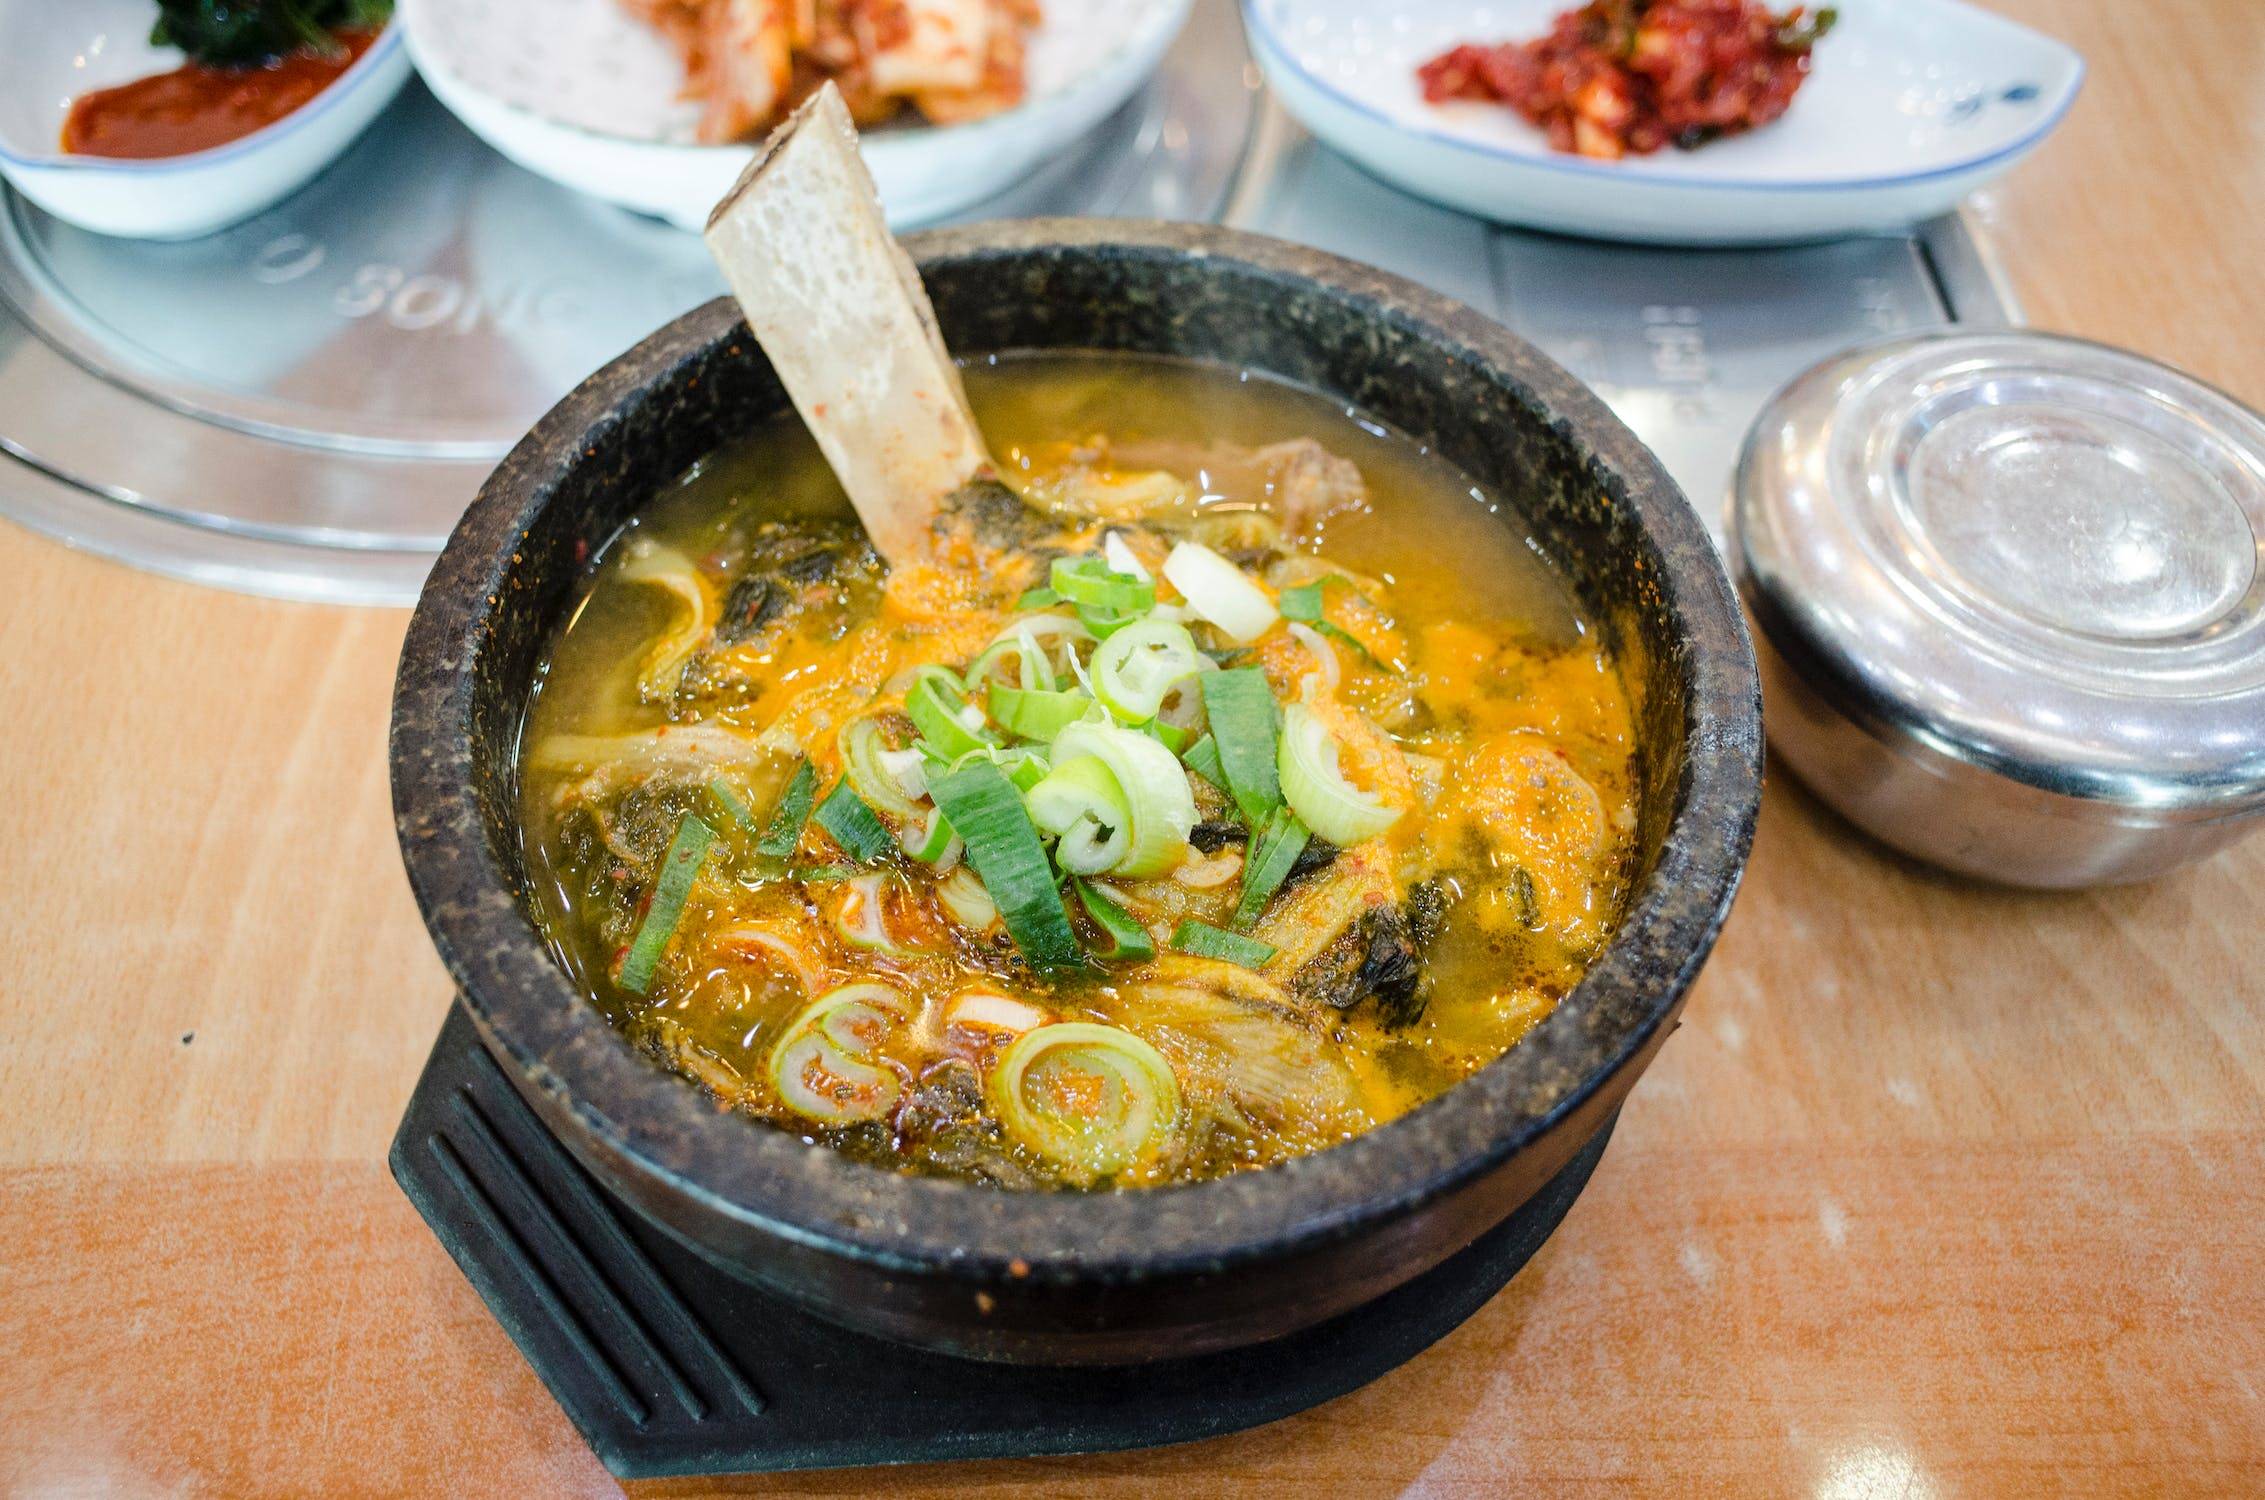 有網友認為將全部食材加在一起煮的韓式料理看起來像餿水